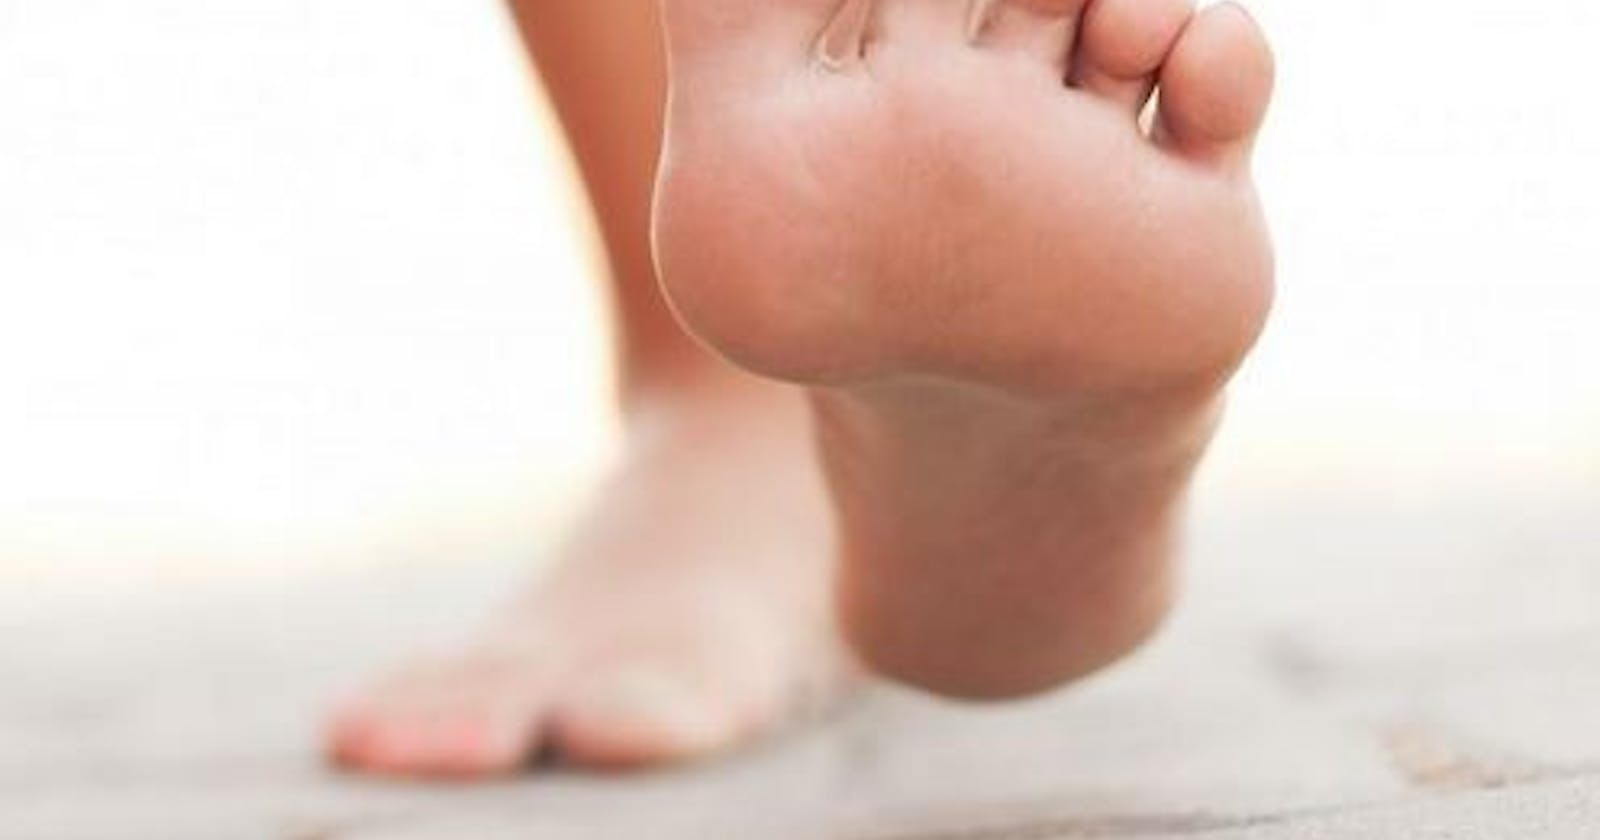 The Clues to Your Health Hidden in Swollen Feet